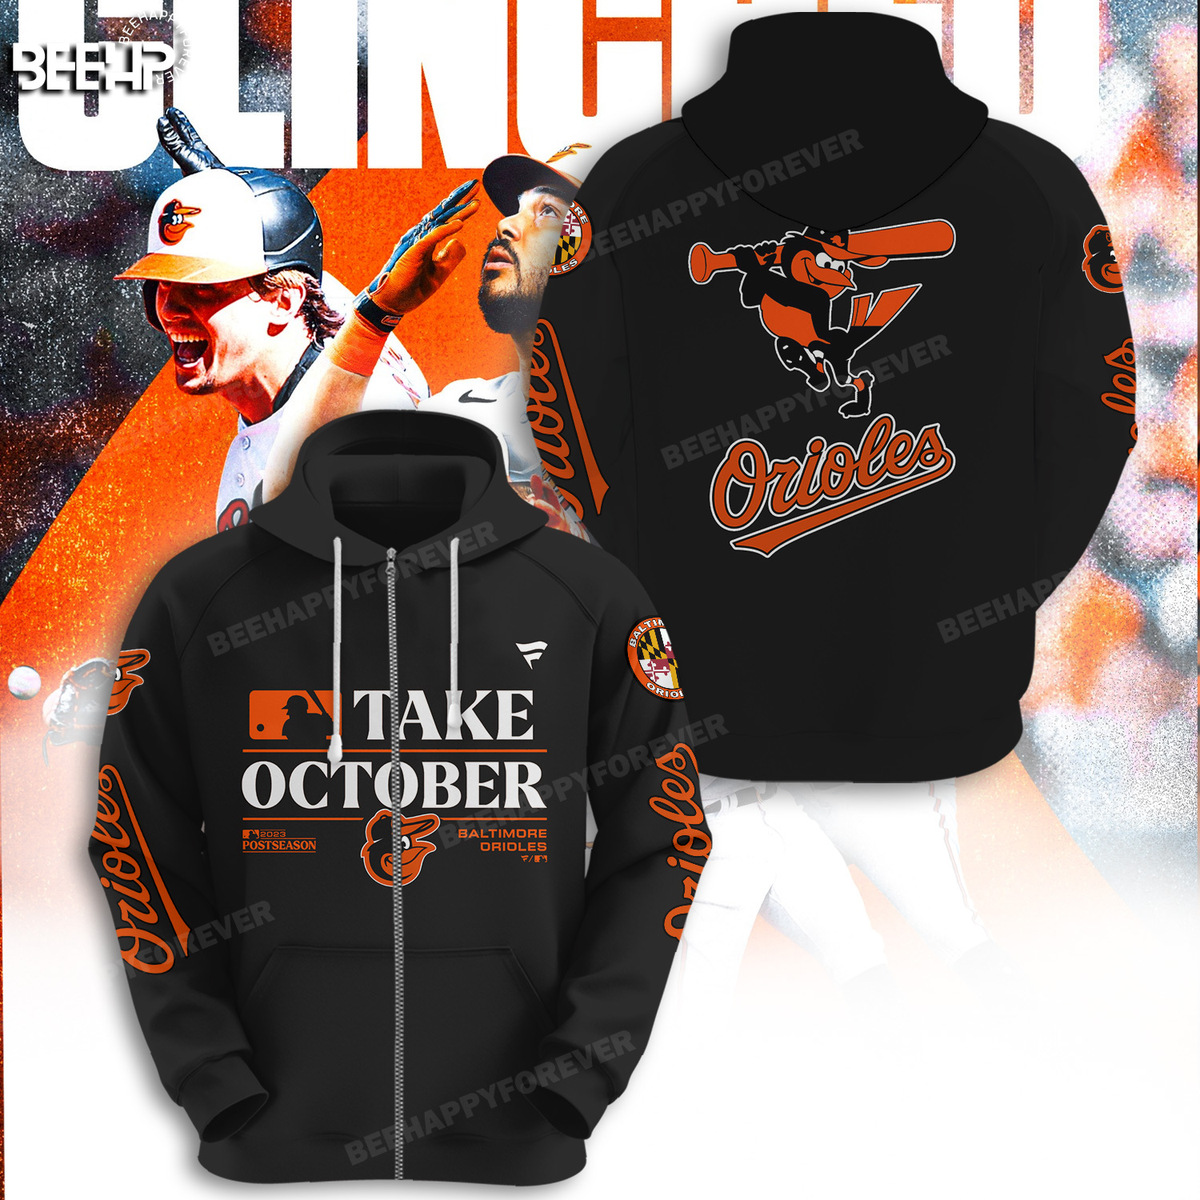 Take October Baltimore Orioles Polo Shirt -  Worldwide  Shipping